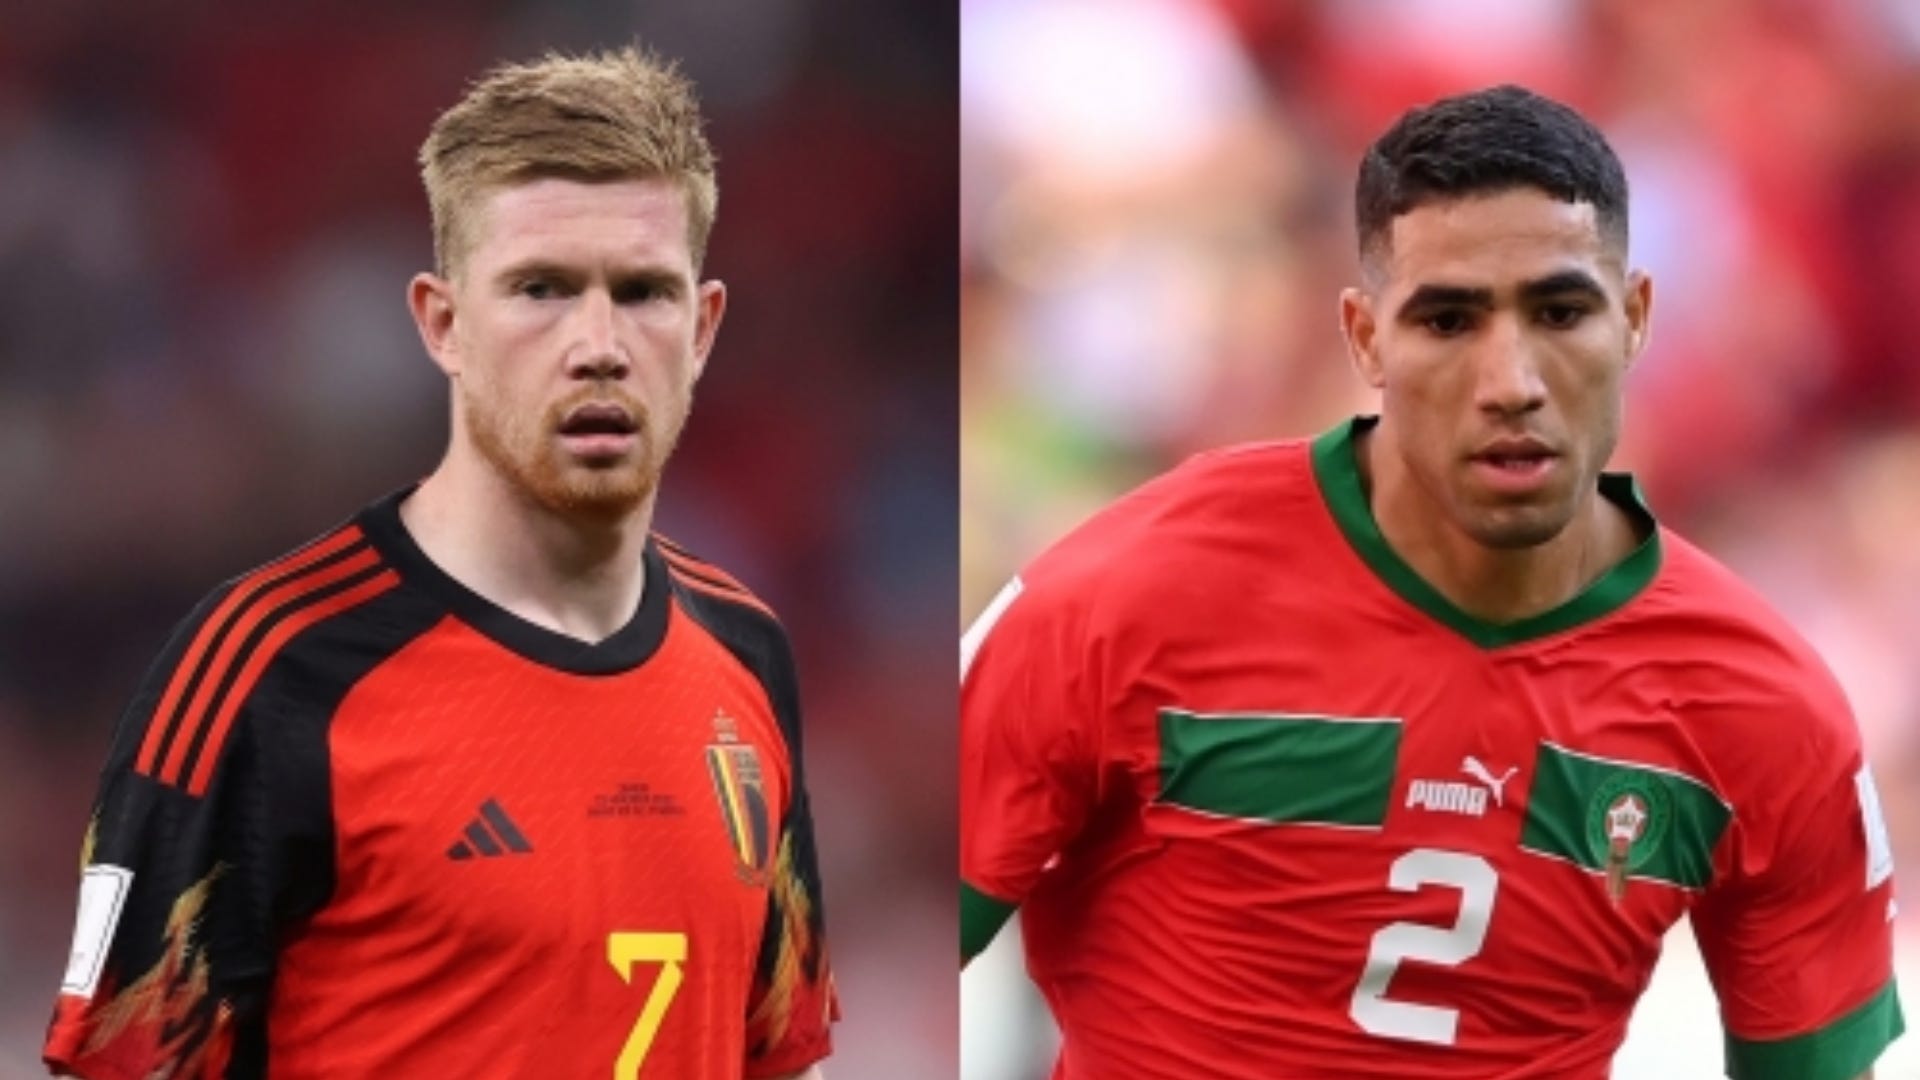 De Bruyne a peur du Maroc | Goal.com Français